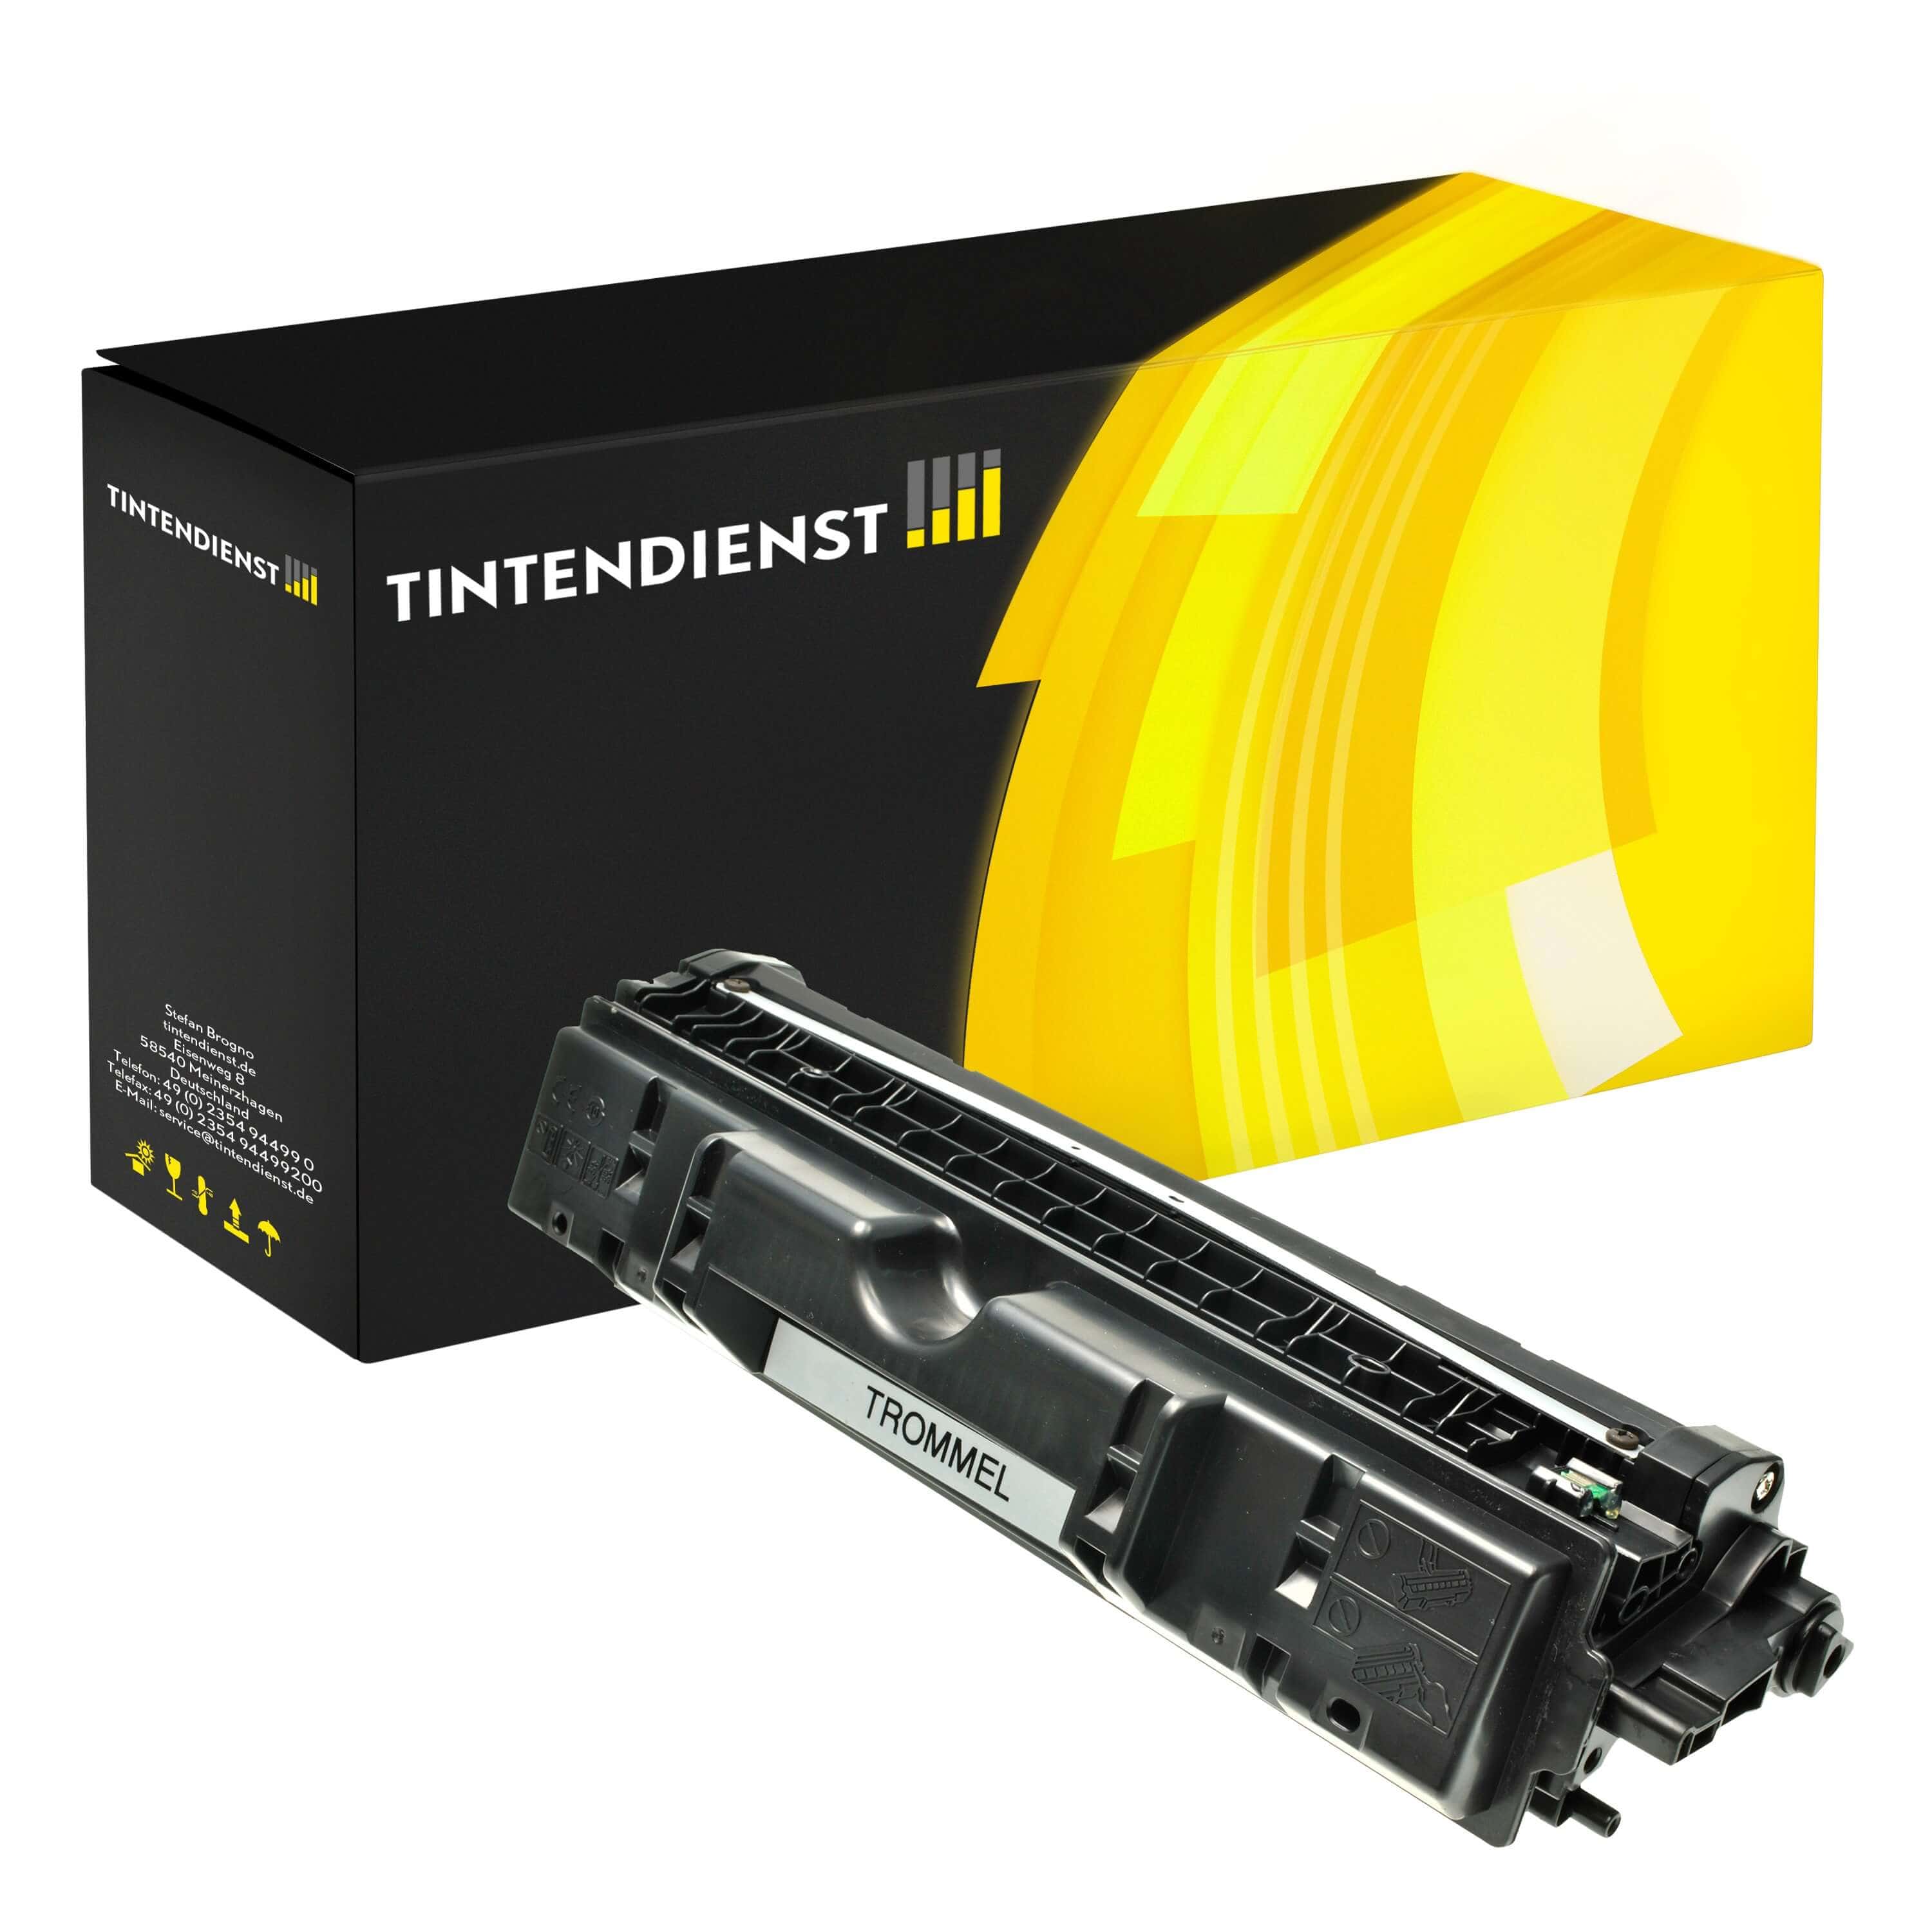 Trommel kompatibel für HP Color LaserJet Pro CP 1026 nw (CE314A / 126A)